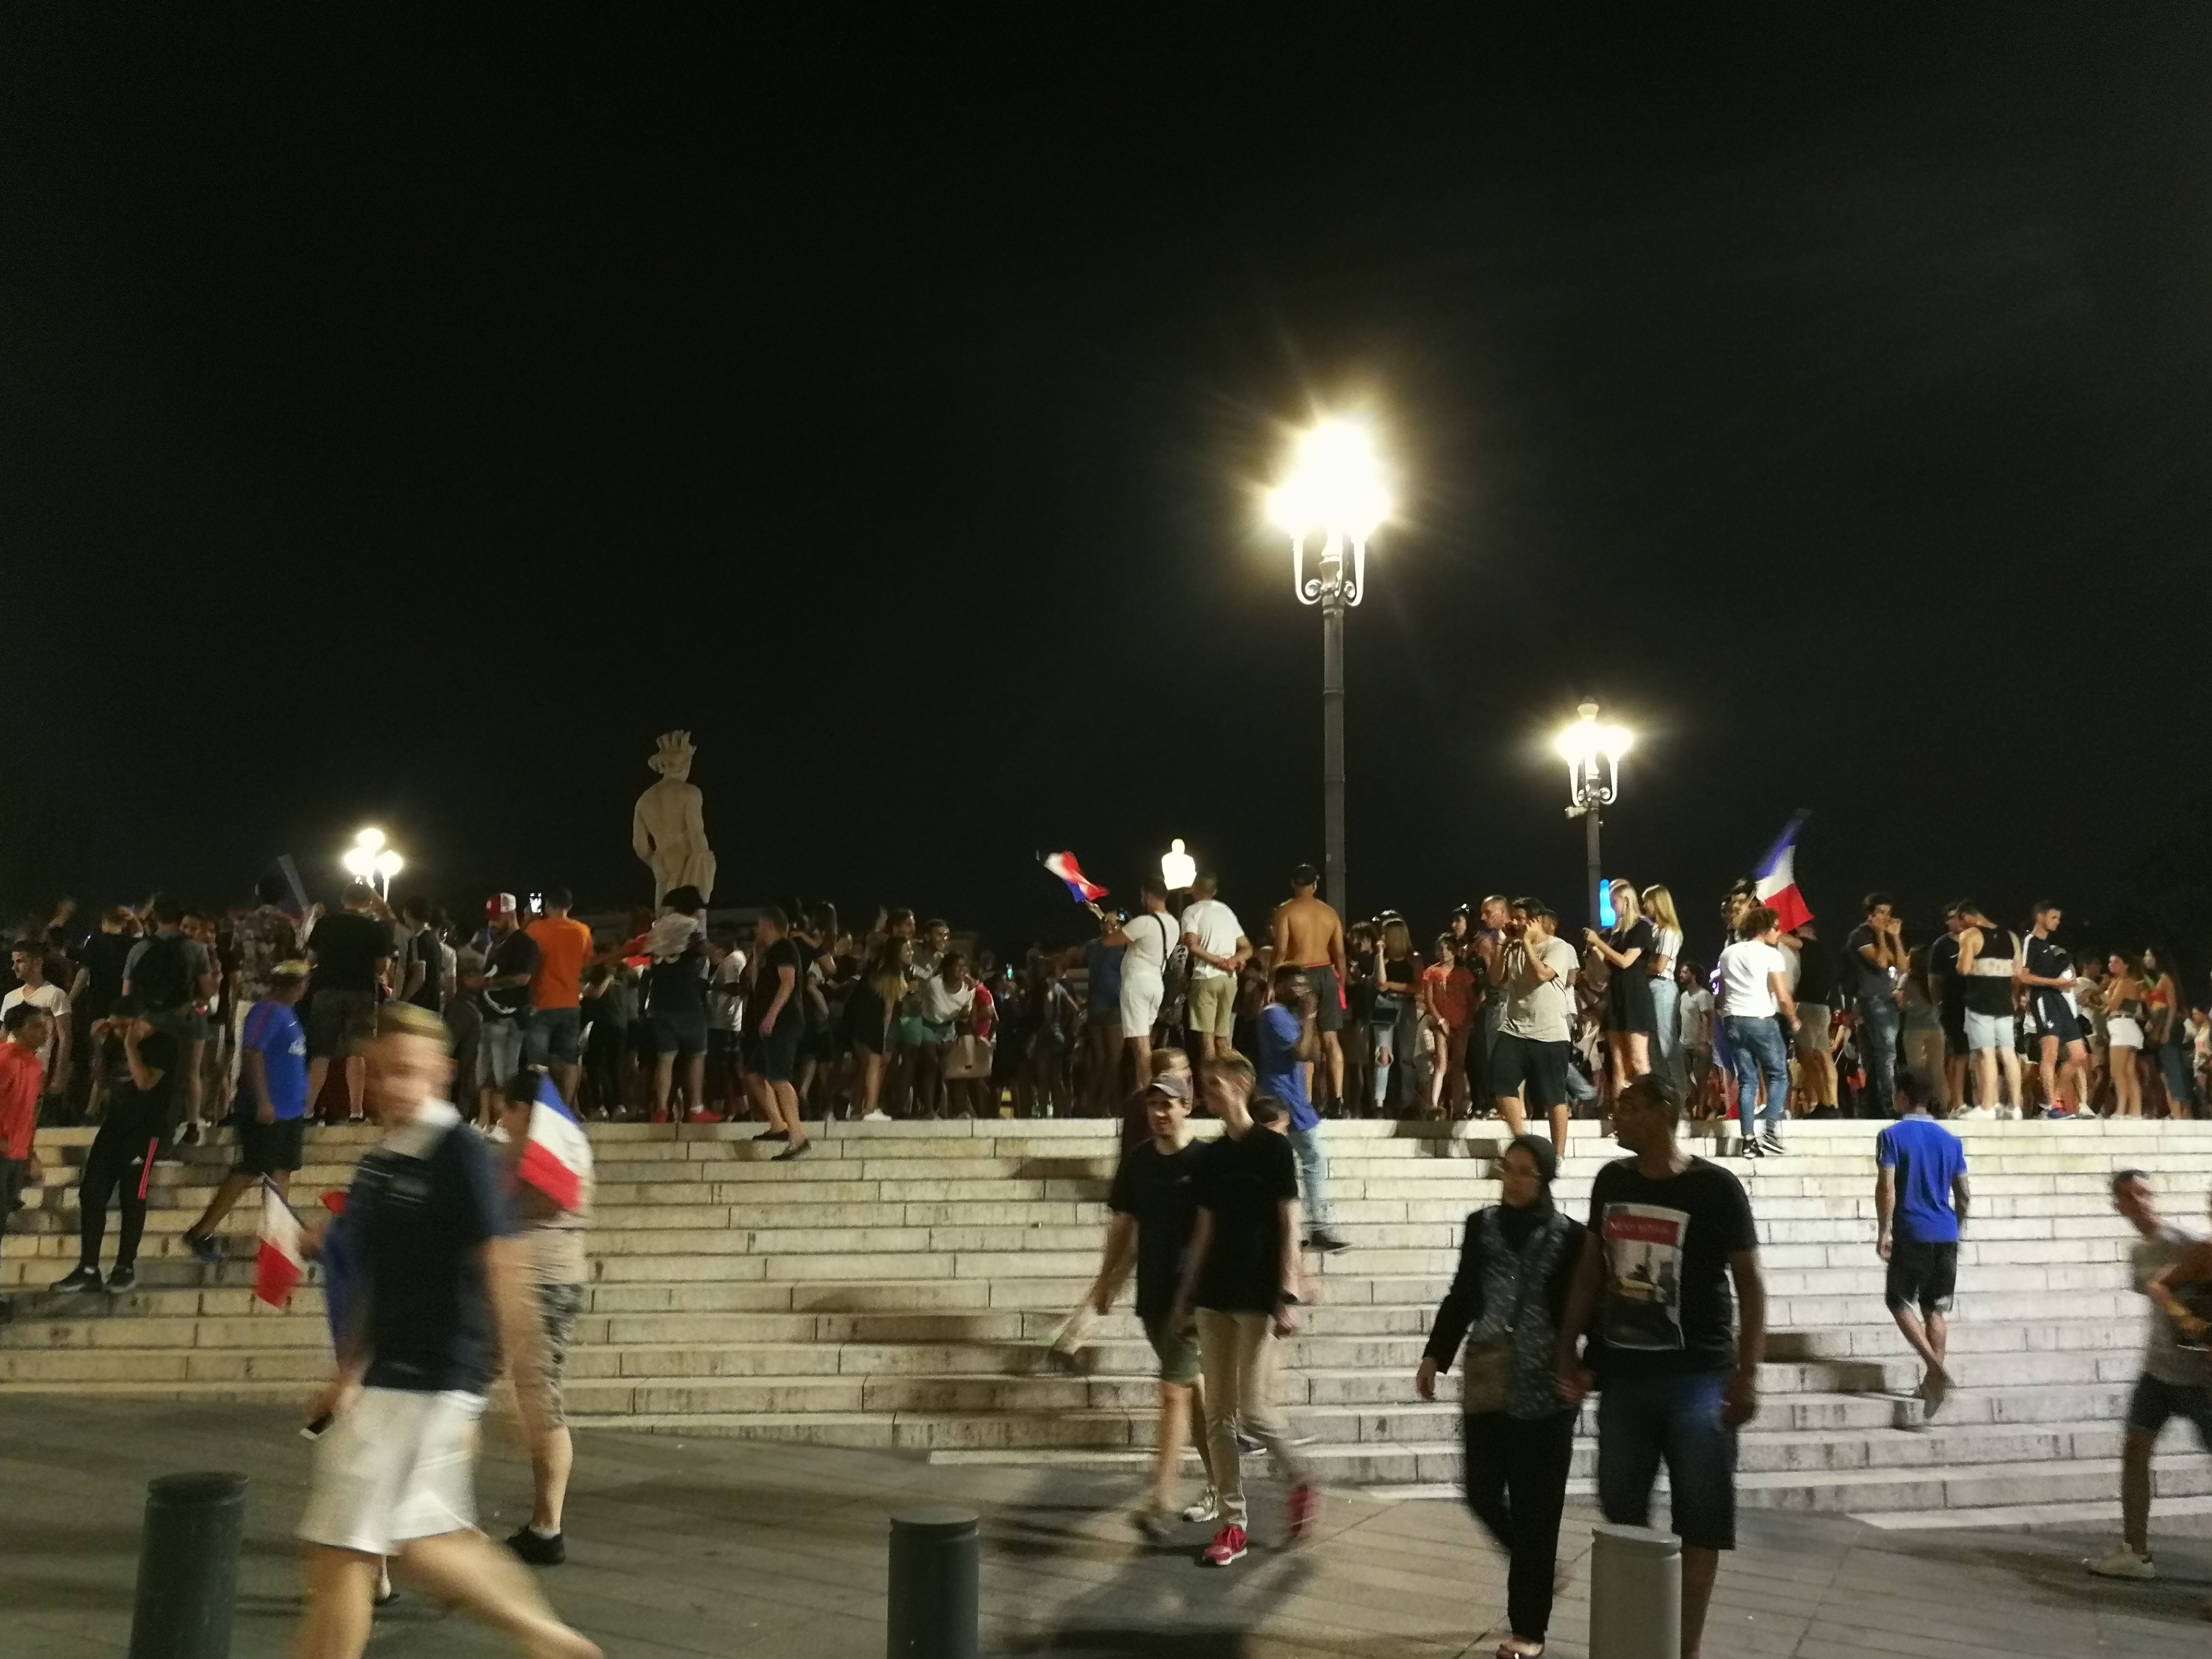 Foci-vb: Így ünnepelte Nizza a francia csapat győzelmét